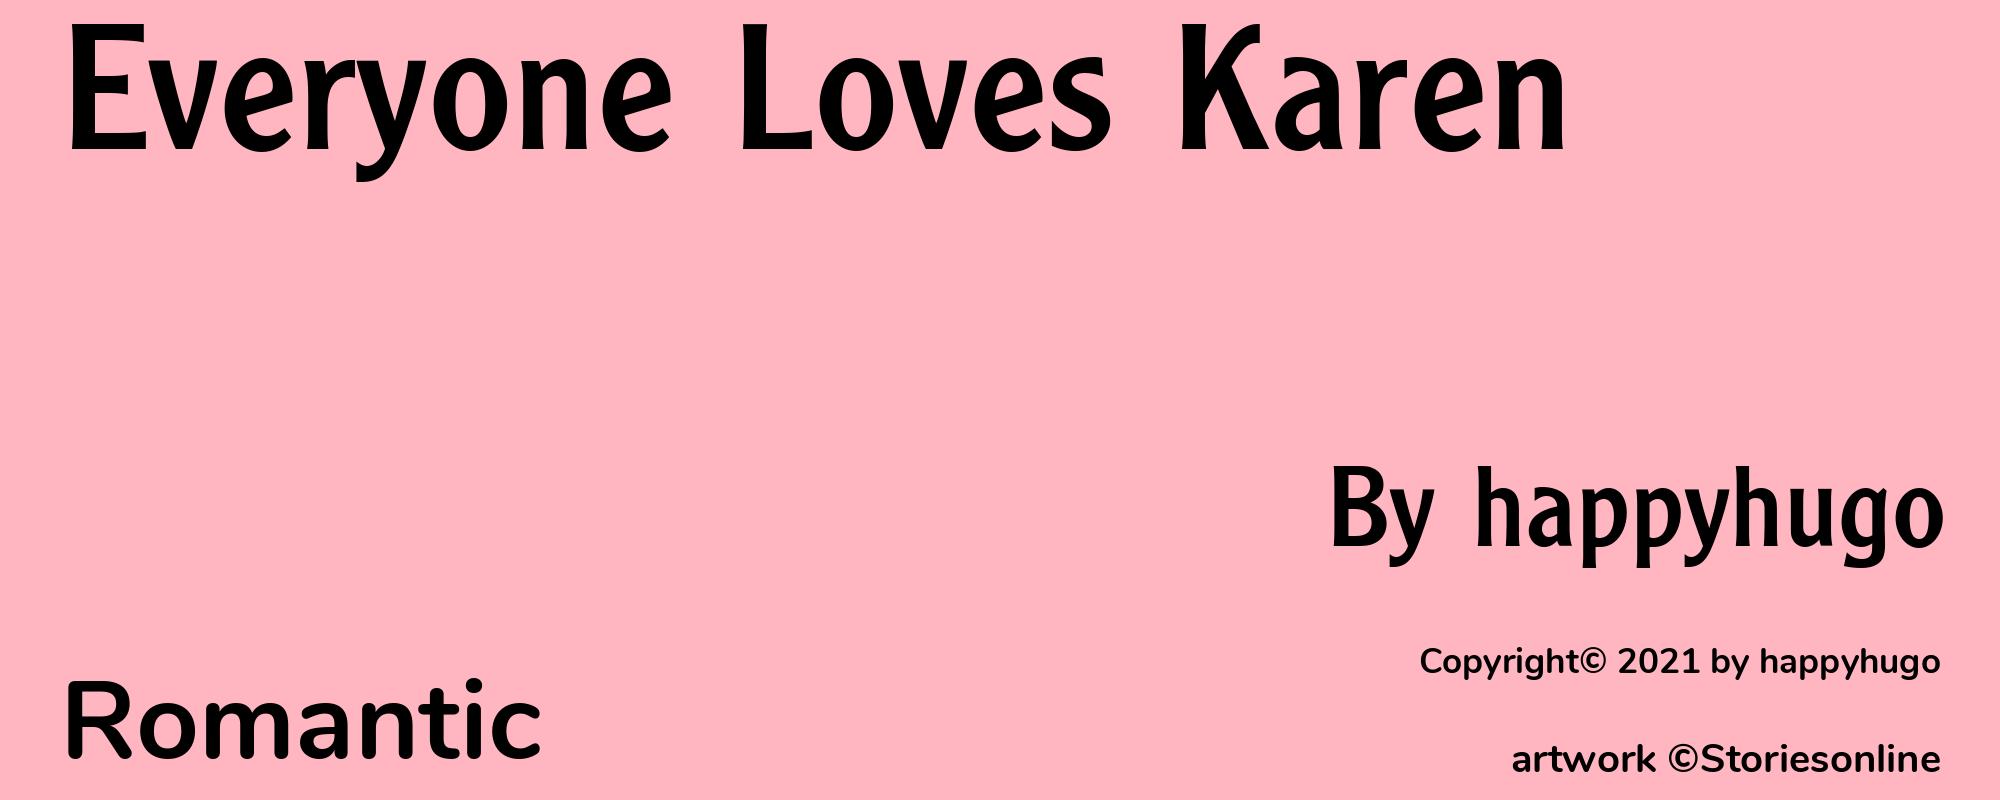 Everyone Loves Karen - Cover